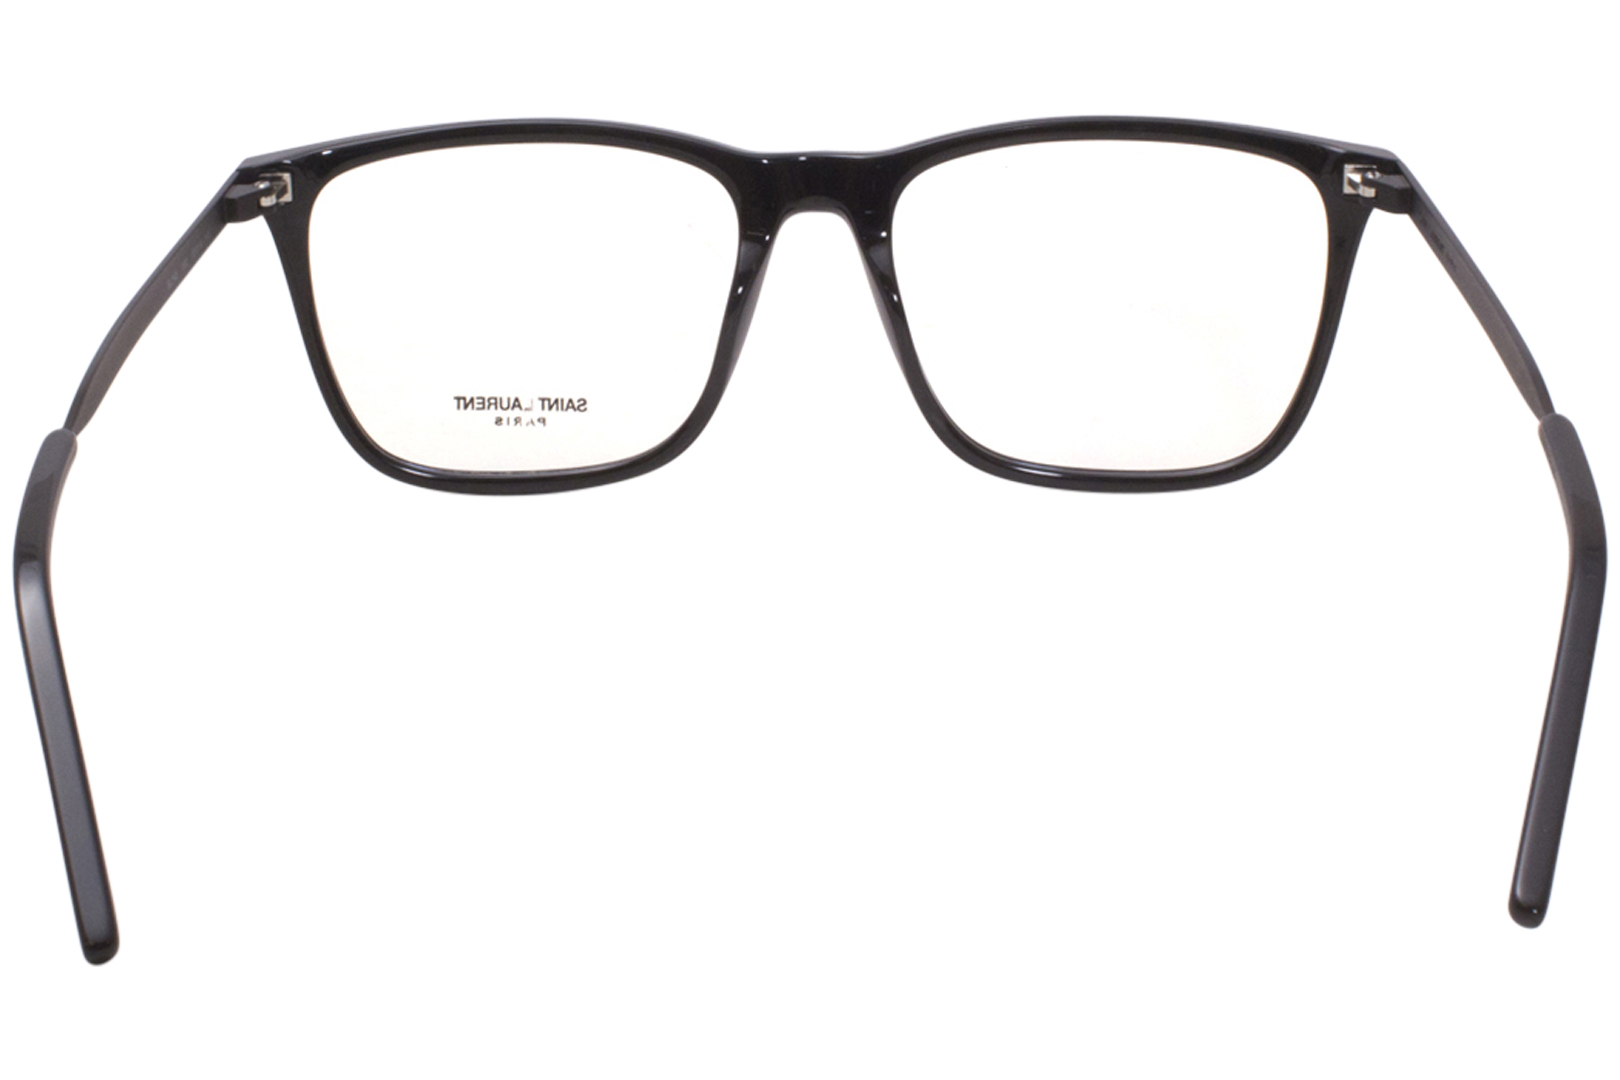 Saint Laurent SL345 Eyeglasses Men's Full Rim Square Optical Frame